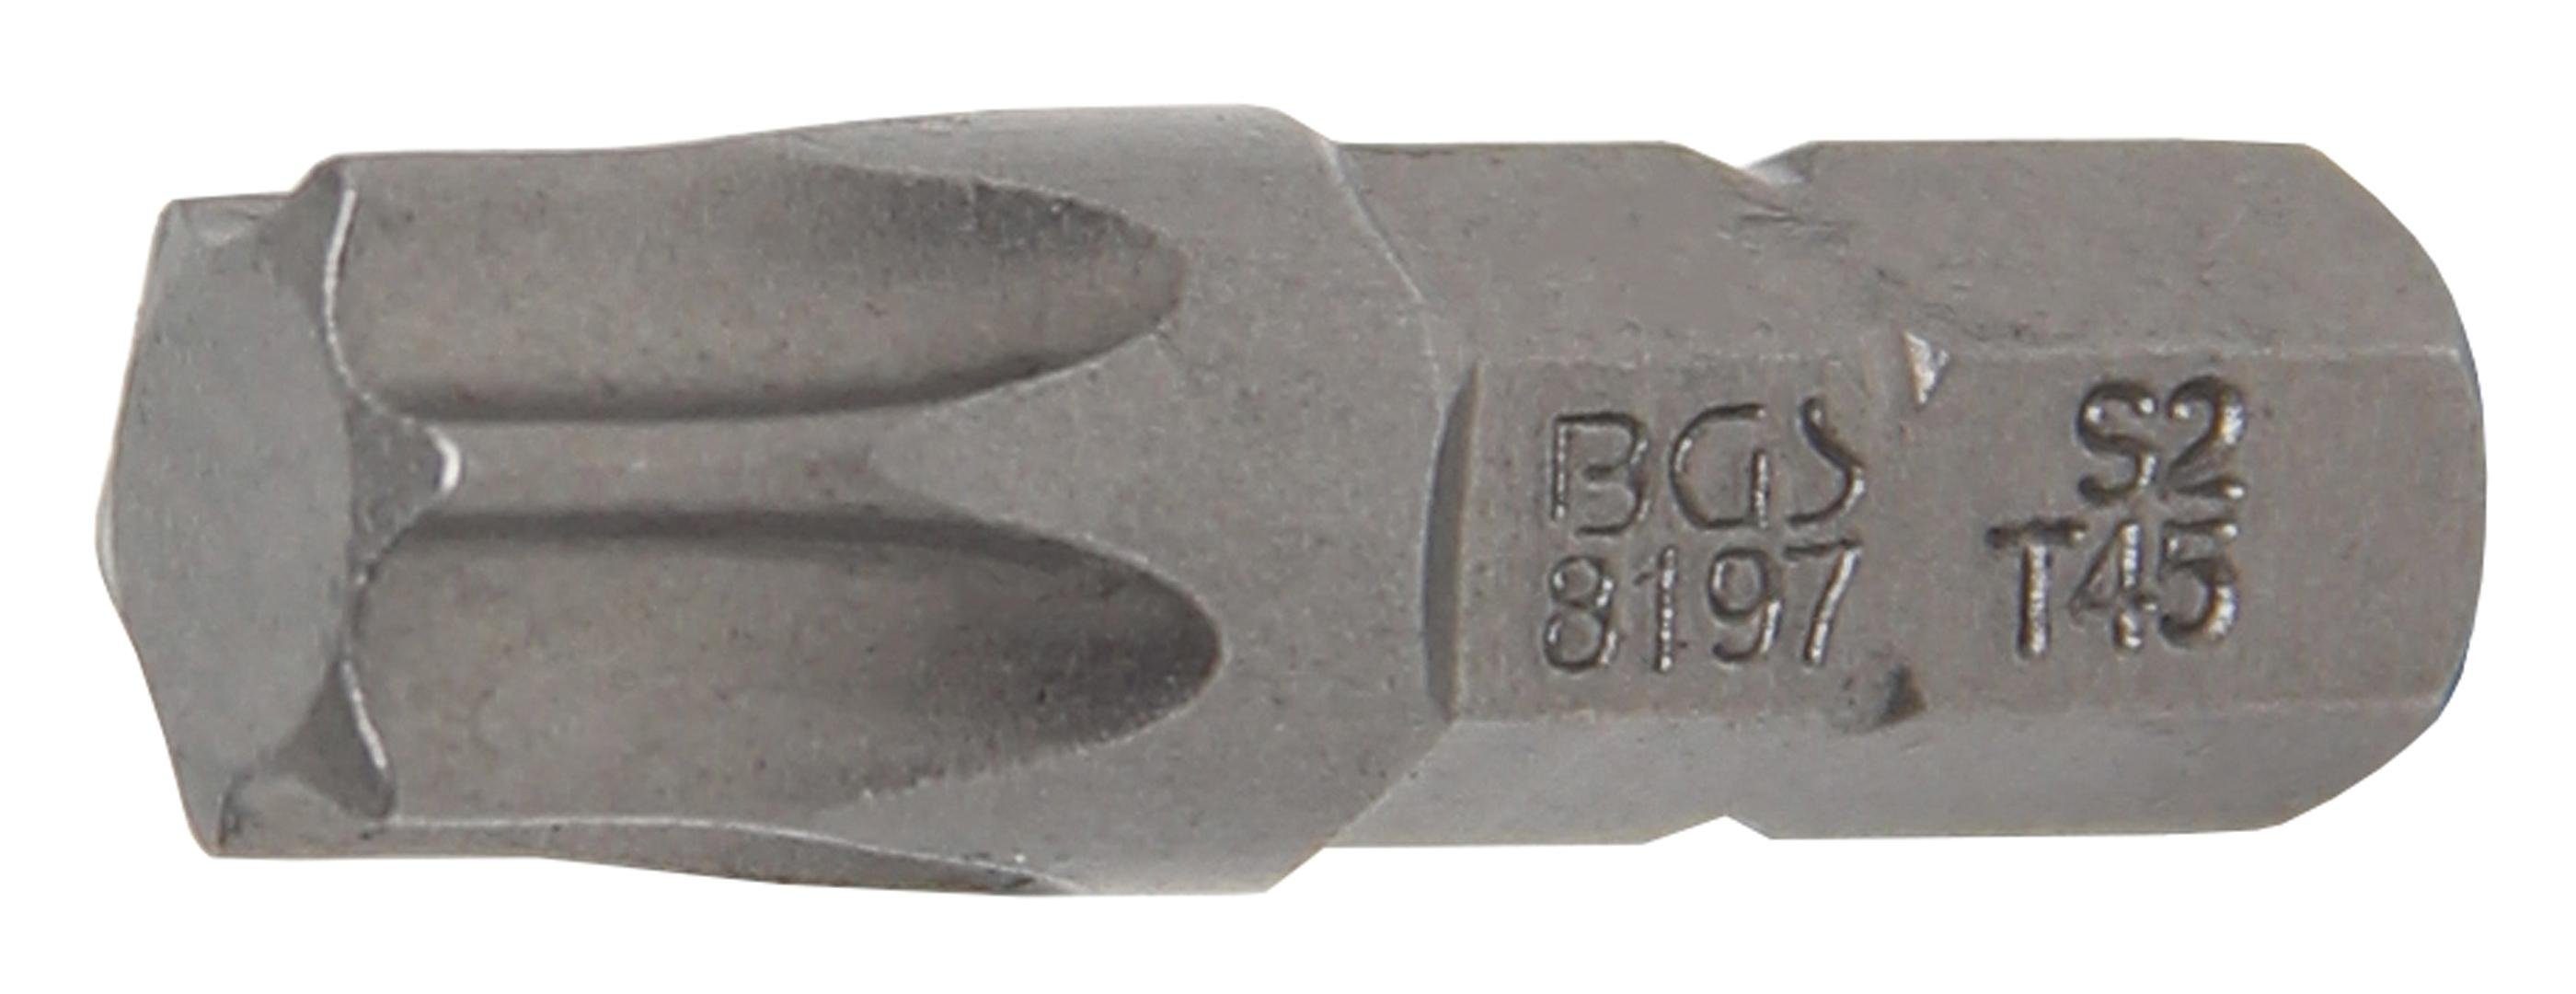 BGS technic Bit-Schraubendreher Bit, Antrieb Außensechskant 6,3 mm (1/4), T-Profil (für Torx) T45